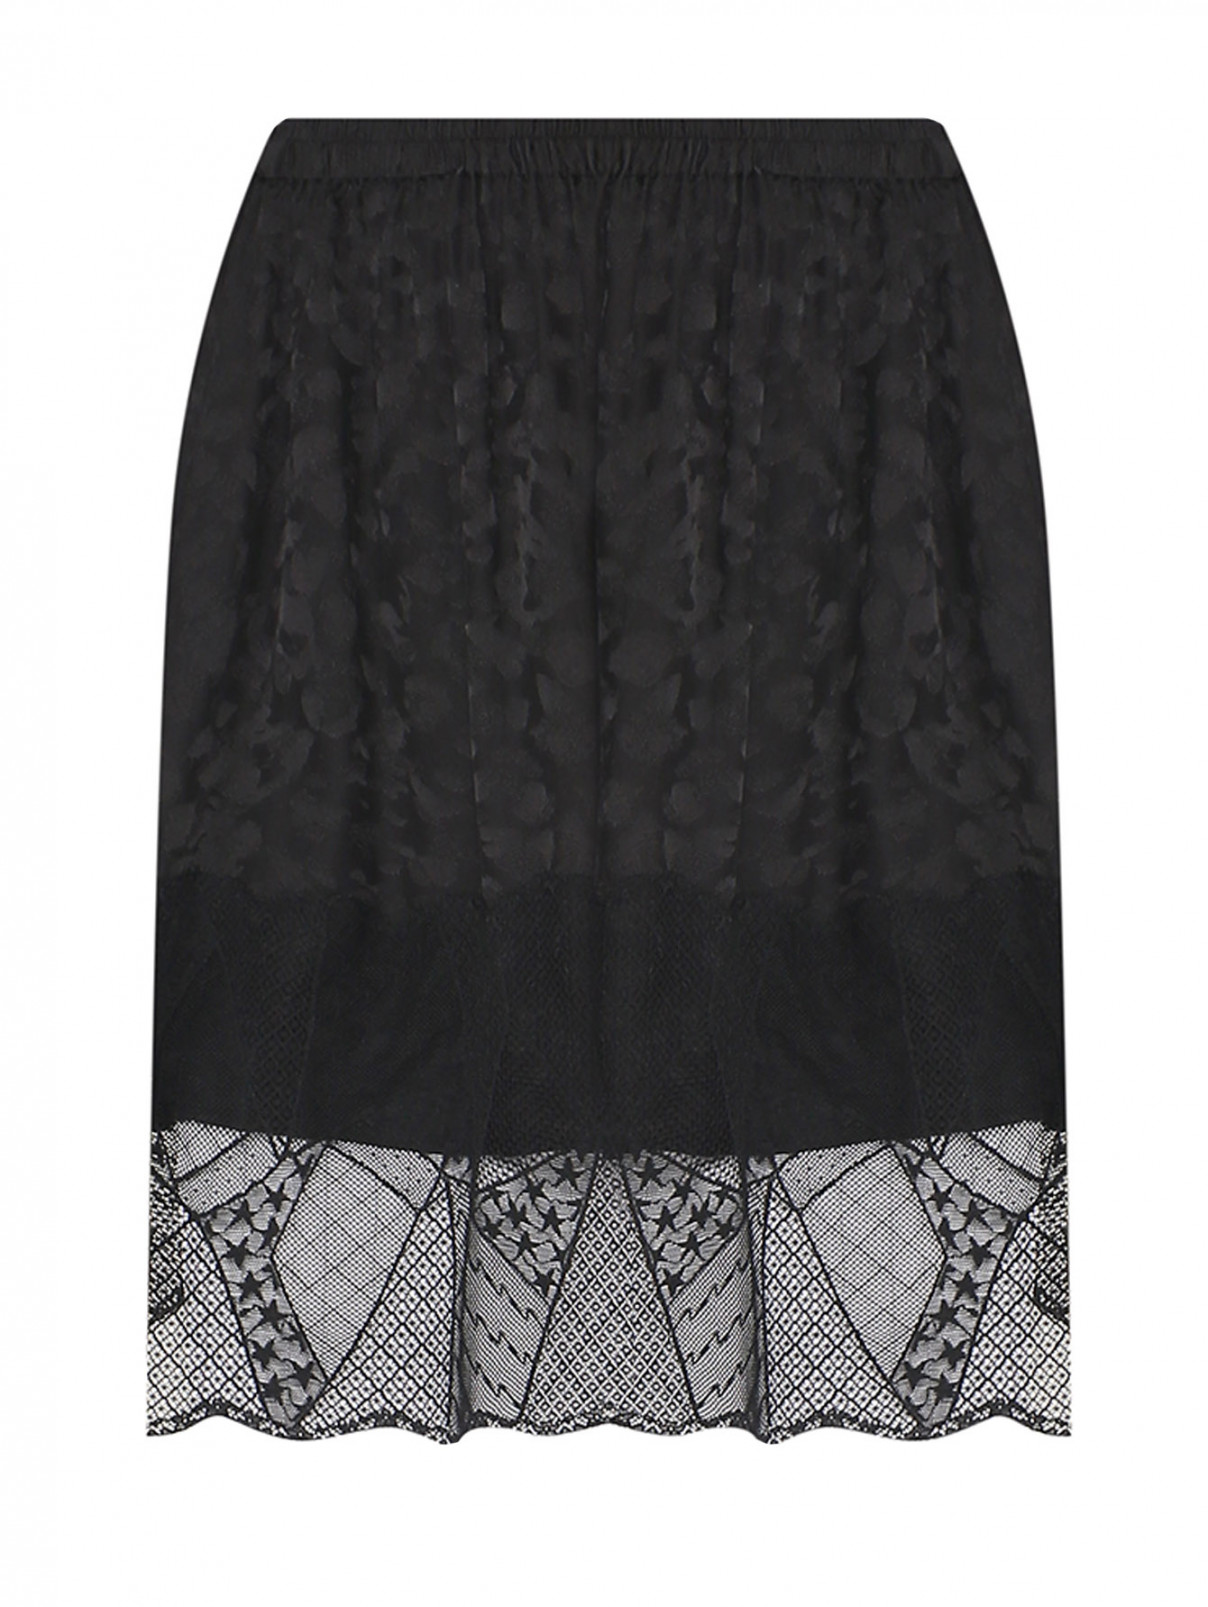 Мини-юбка из шелка с узором и кружевом Zadig&Voltaire  –  Общий вид  – Цвет:  Черный